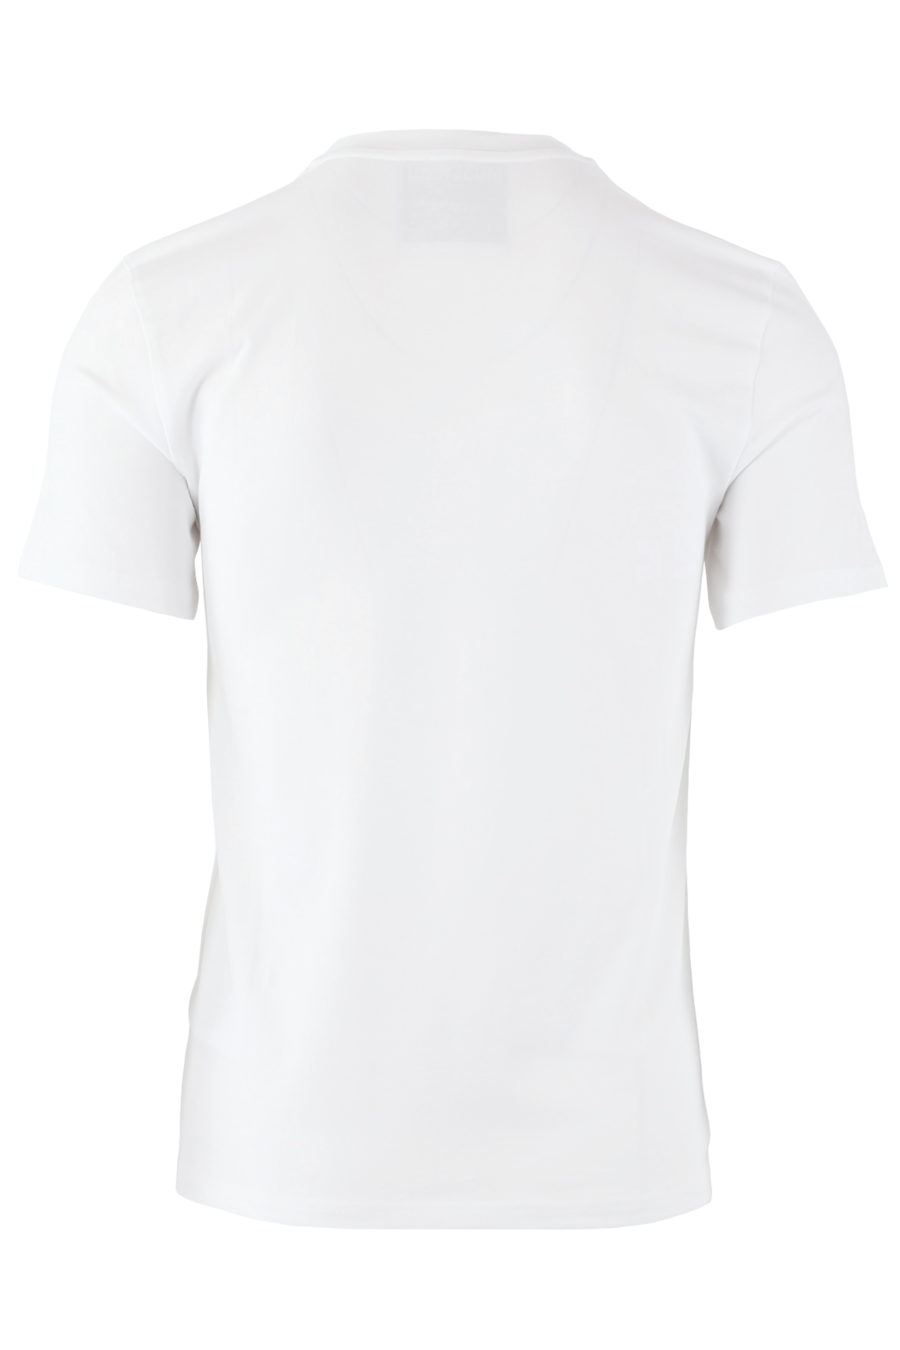 Camiseta elástica blanca slim fit - IMG 7154 copia